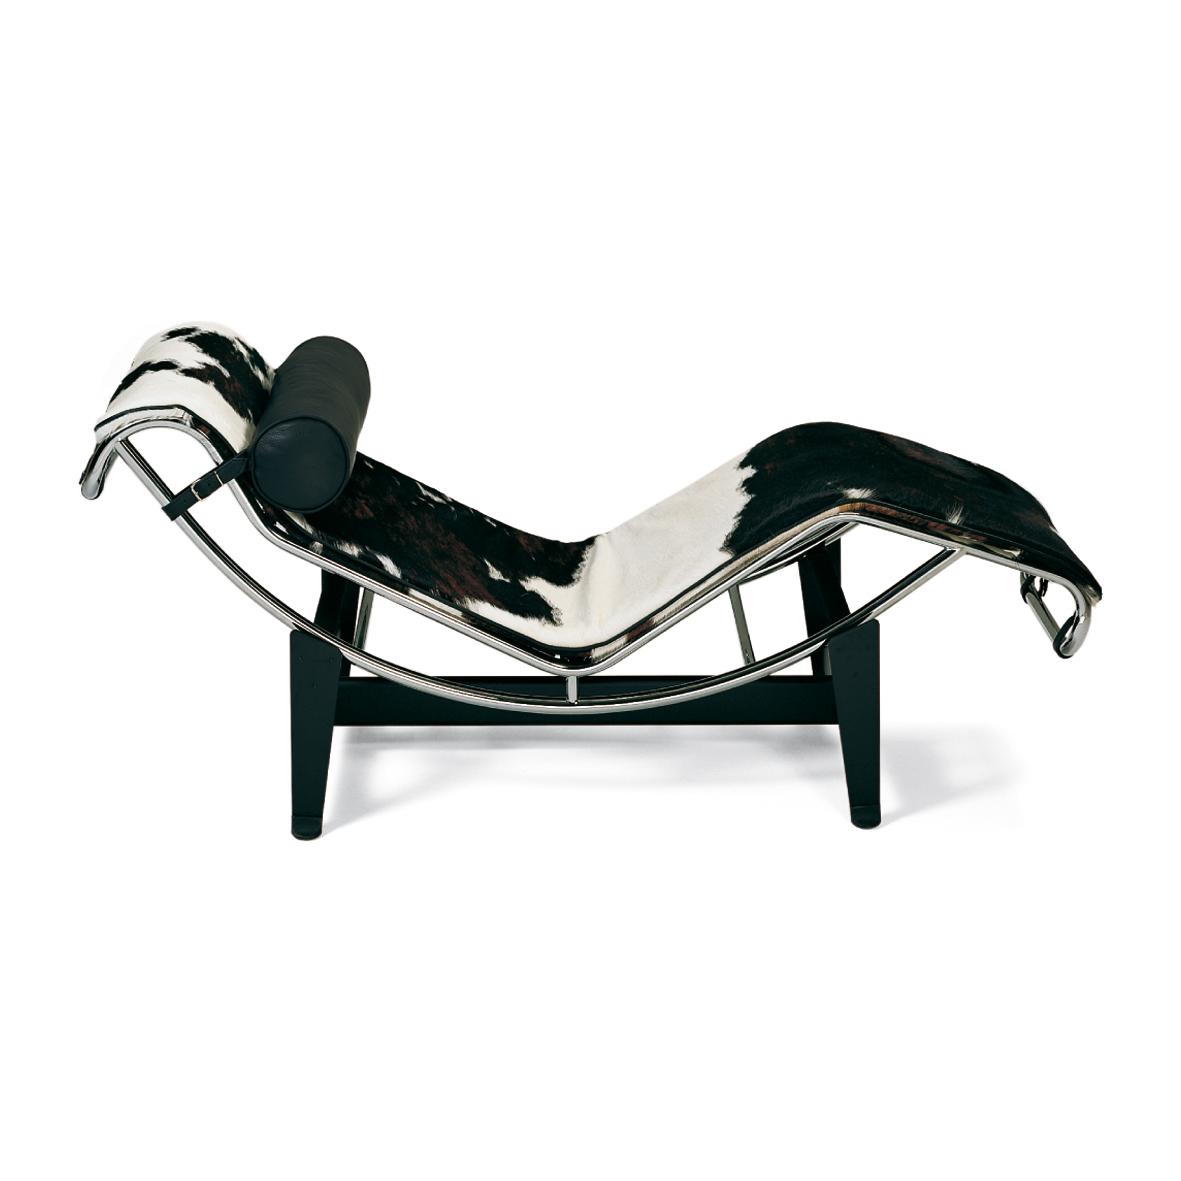 LUX103/OR Le Corbusier - Poltrona relax con rivestimento imbottito